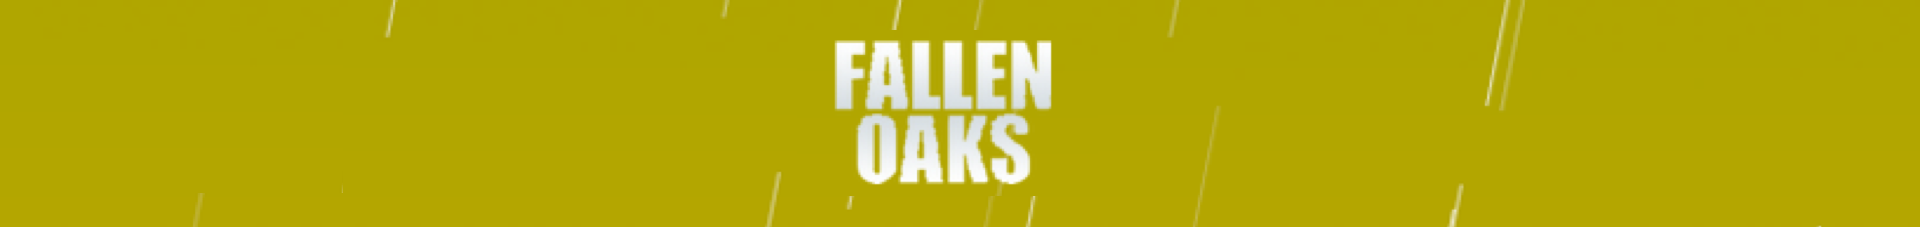 Fallen Oaks